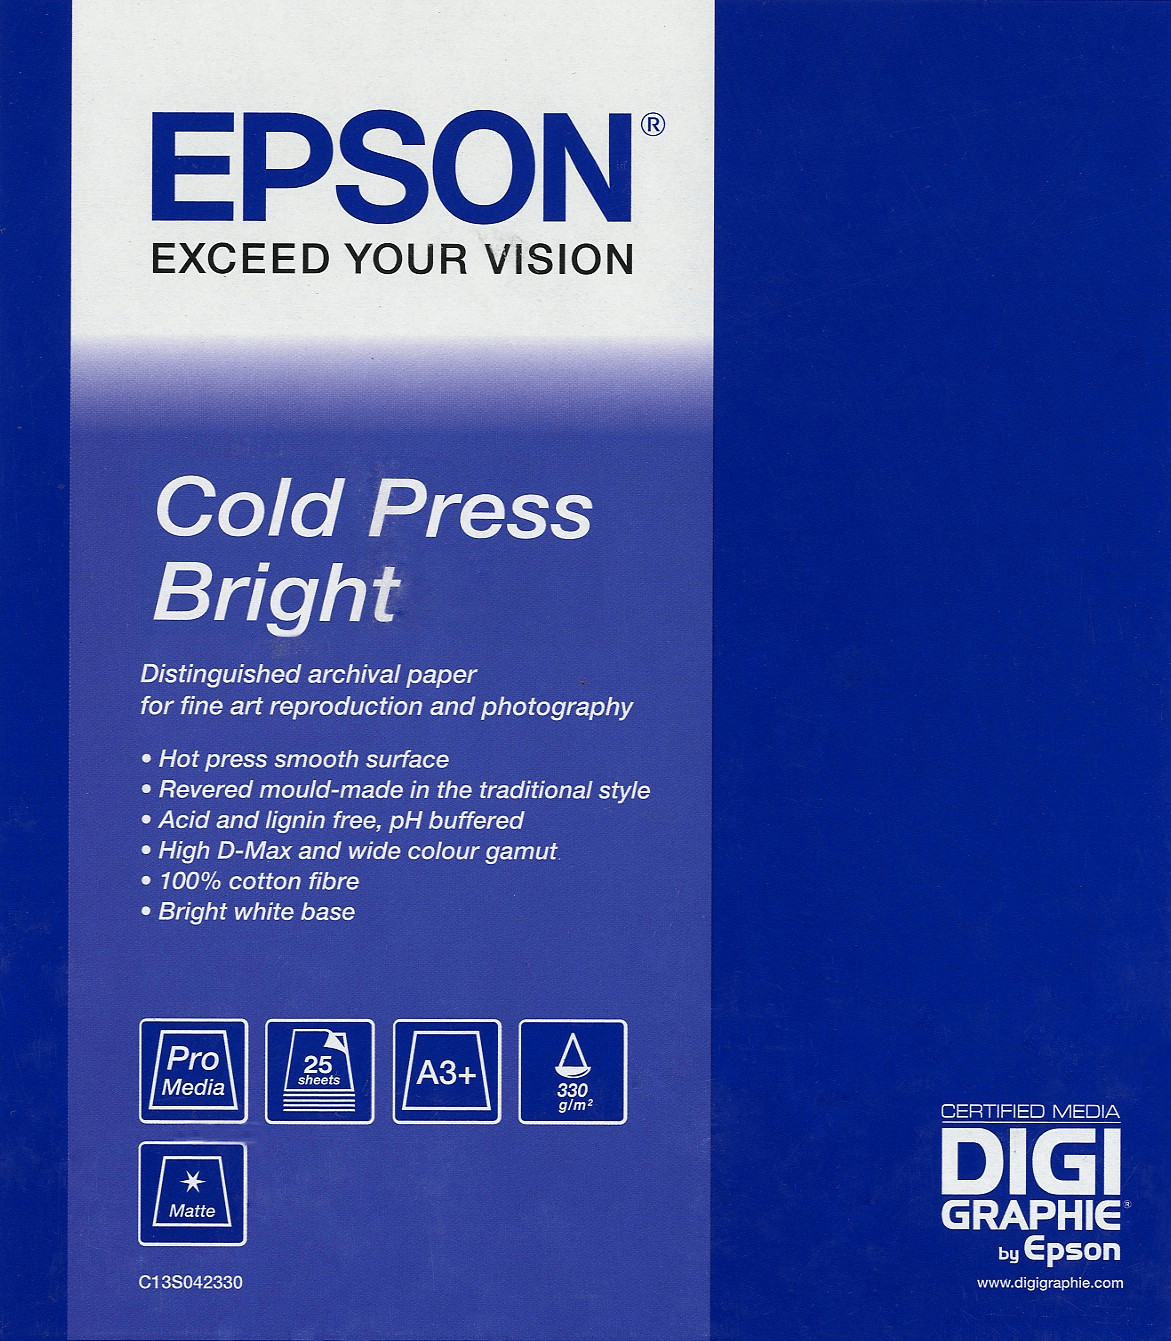 Epson Cold Press Bright (C13S042313)